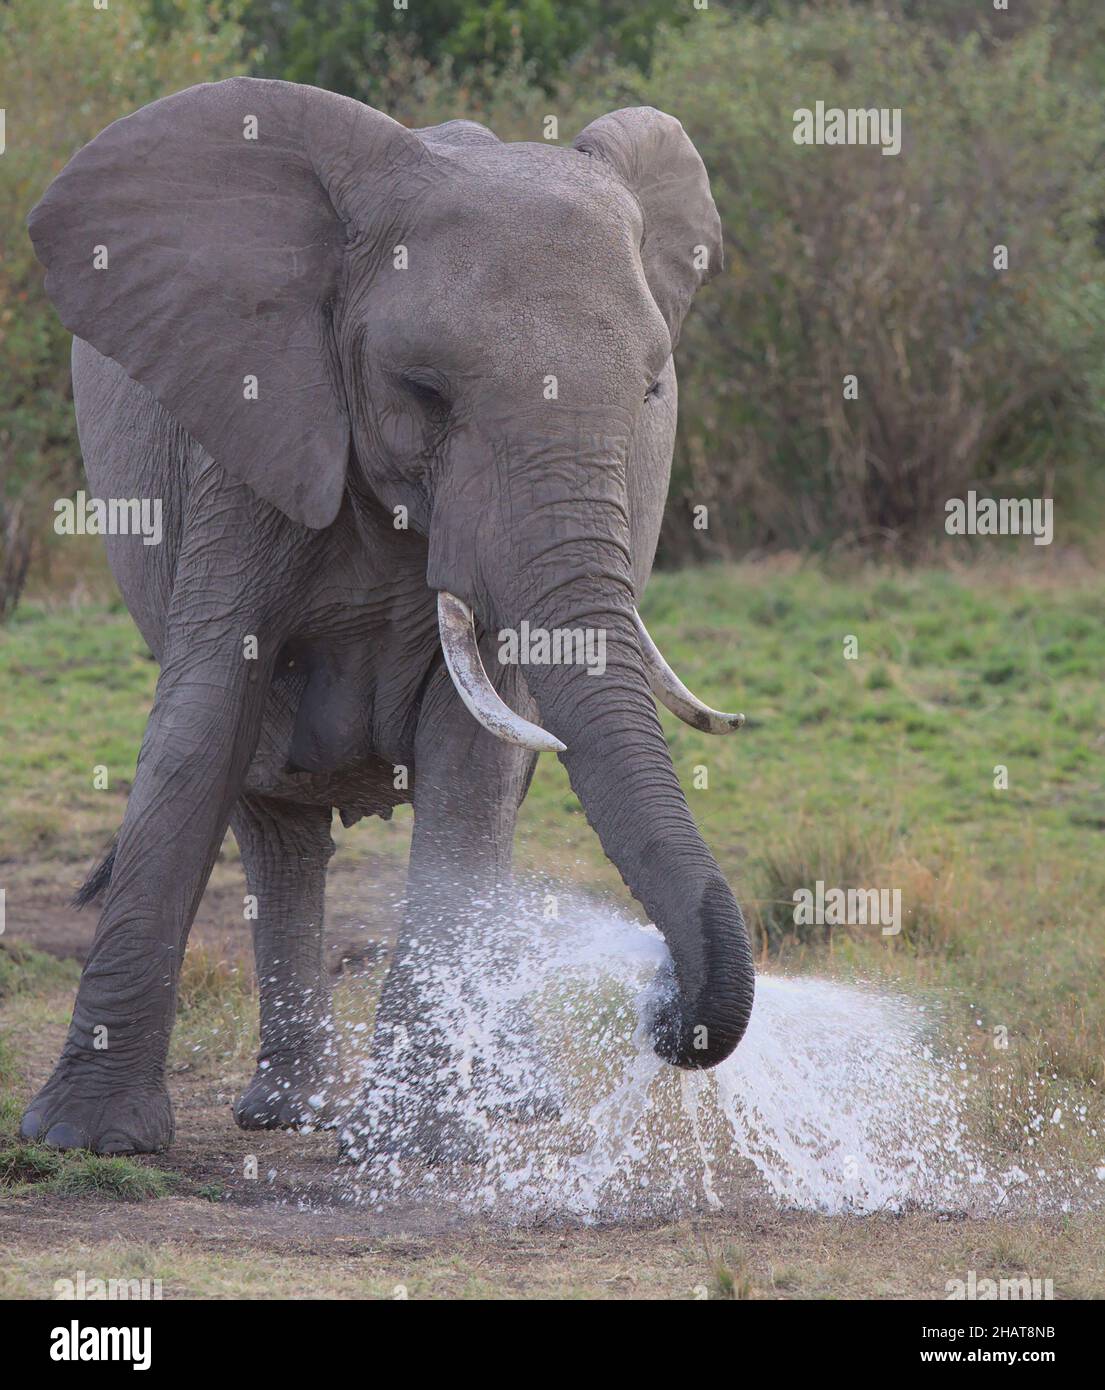 portrait de l'éléphant d'afrique debout et vaporisant des jets d'eau avec son tronc dans les plaines sauvages de la mara masai, kenya Banque D'Images